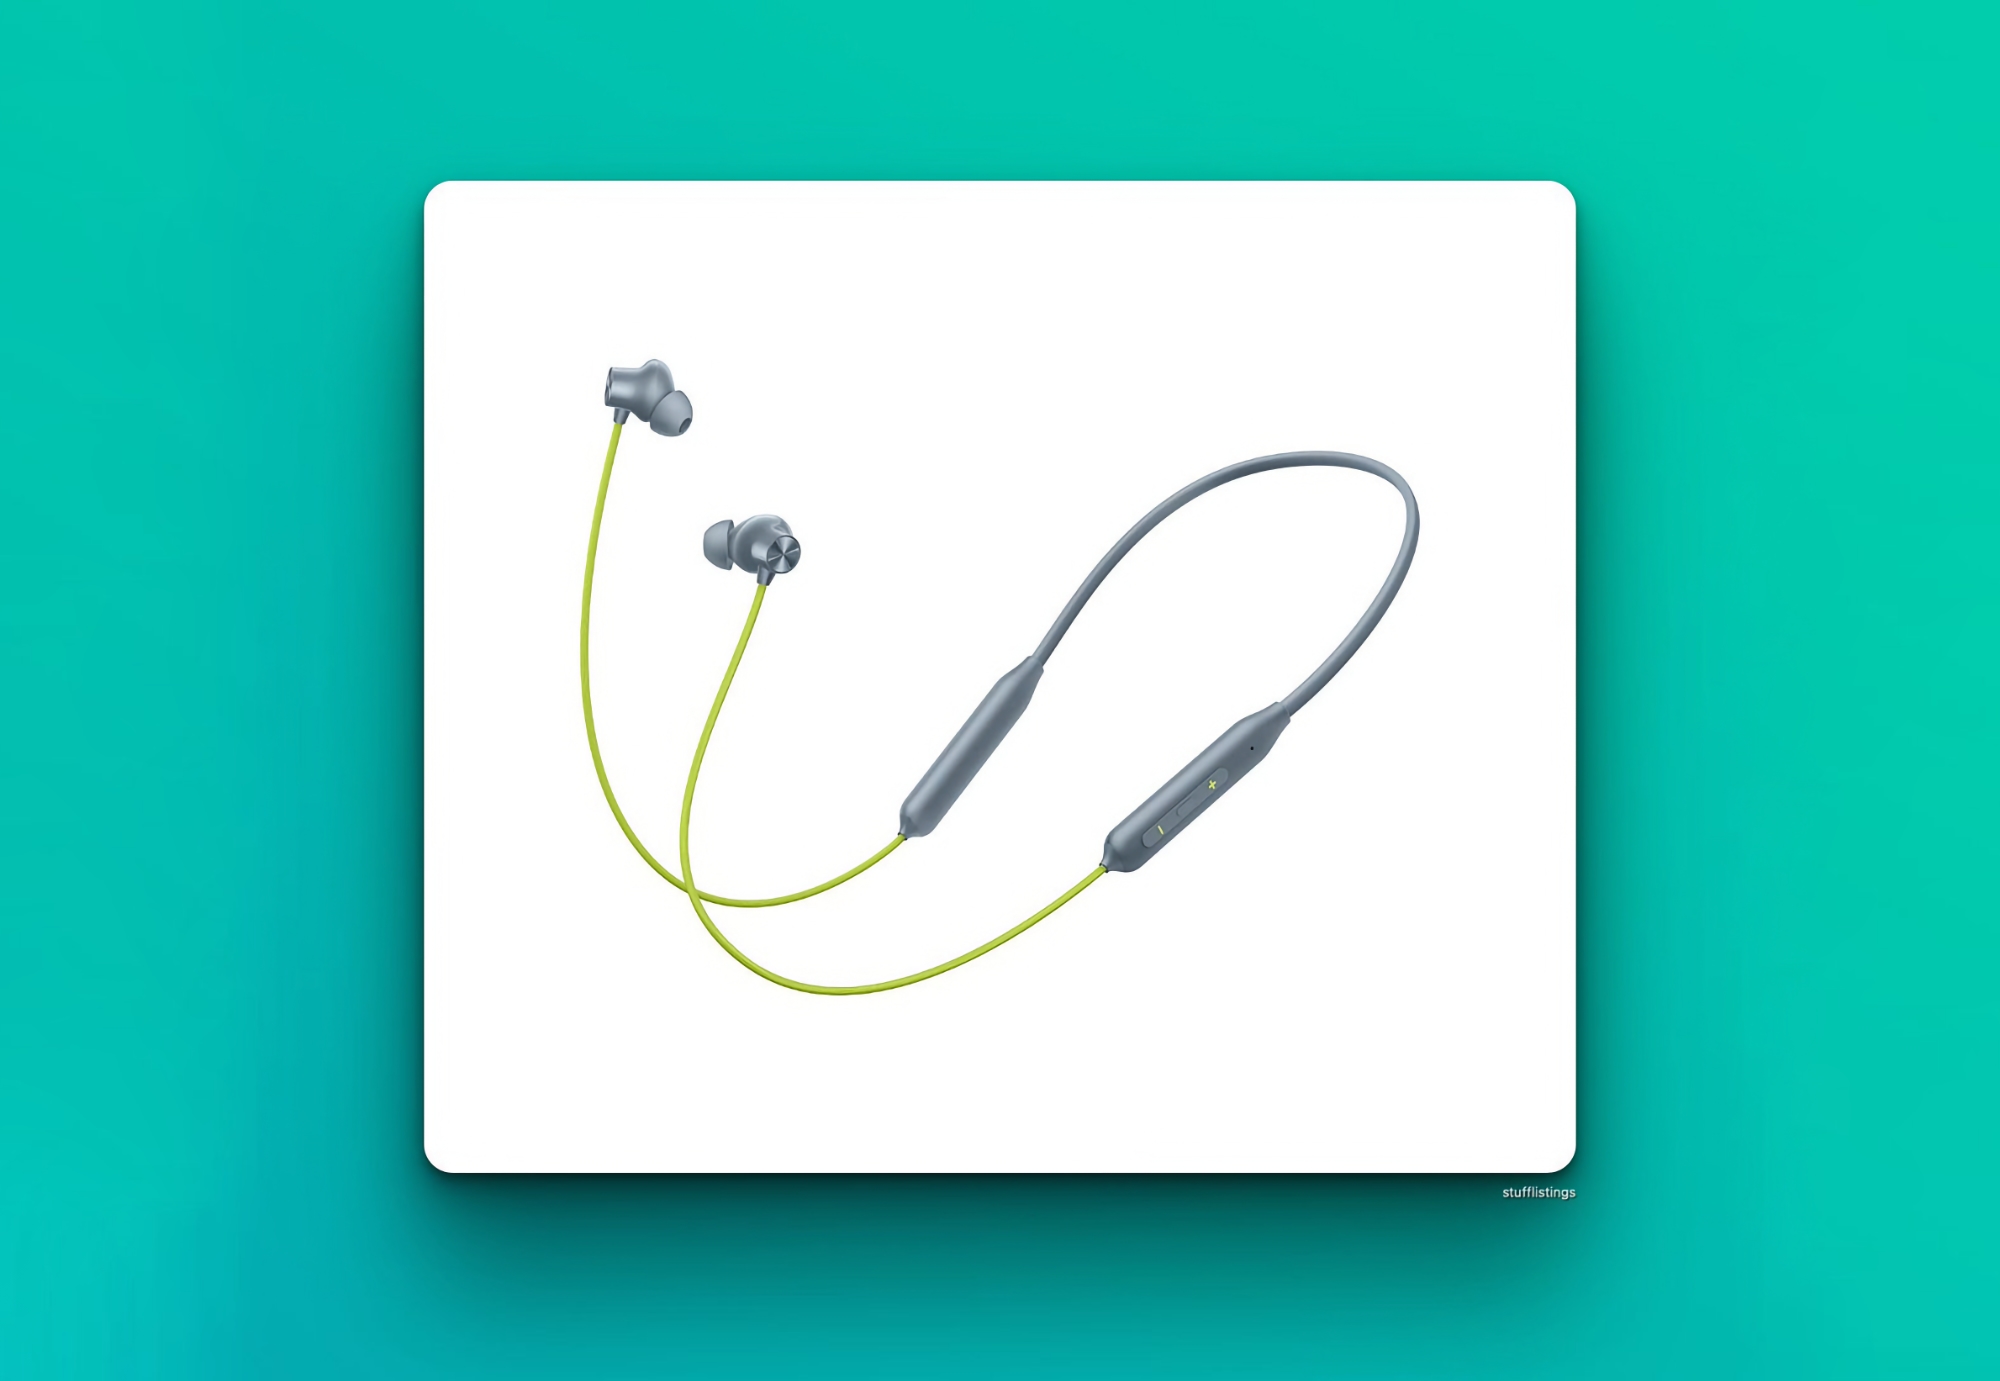 Інсайдер: OnePlus 1 червня представить навушники Bullets Wireless Z2 у кольорі Jazz Green